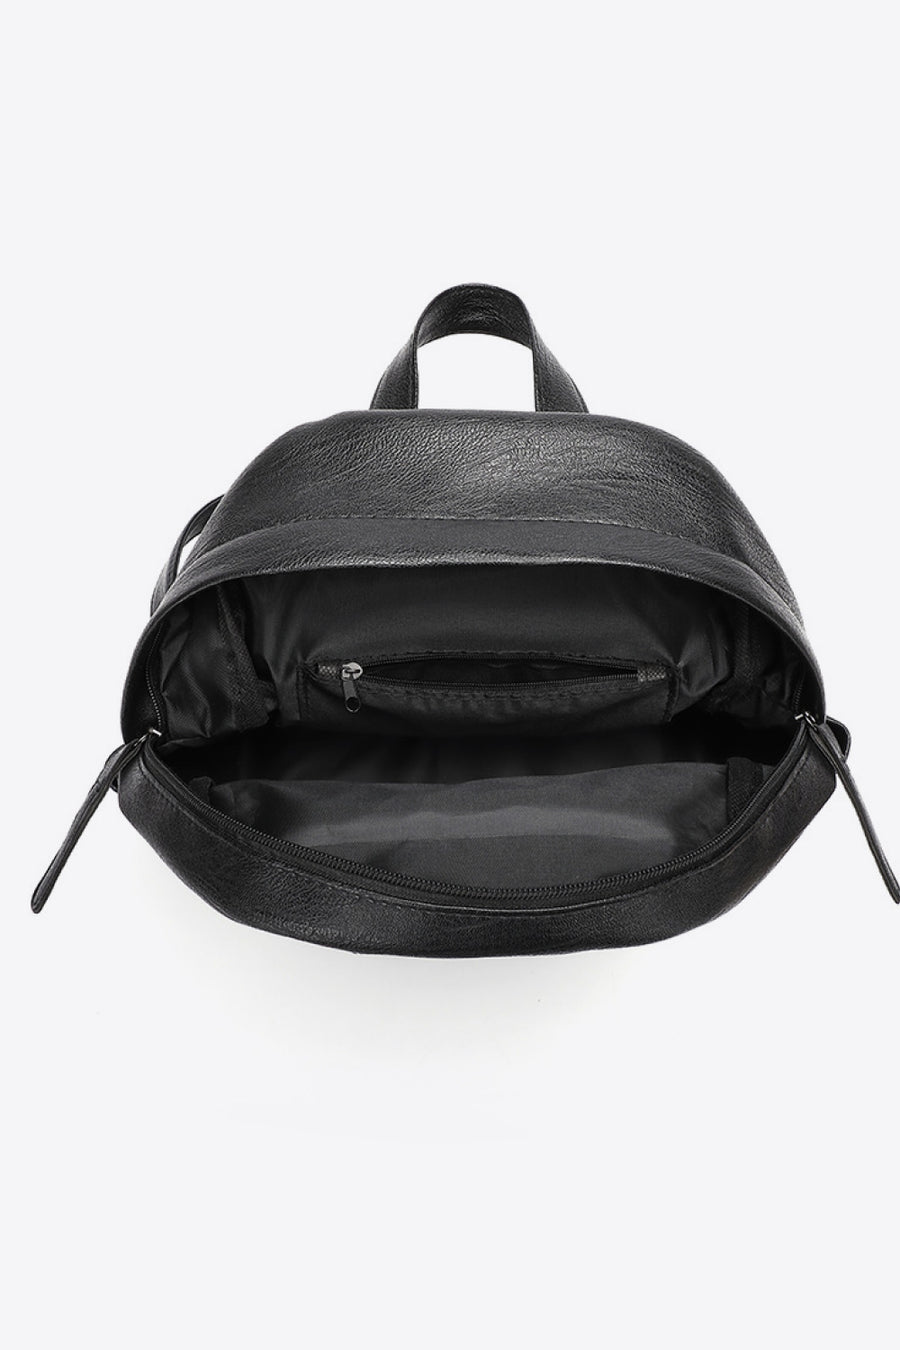 Baeful PU Leather Backpack